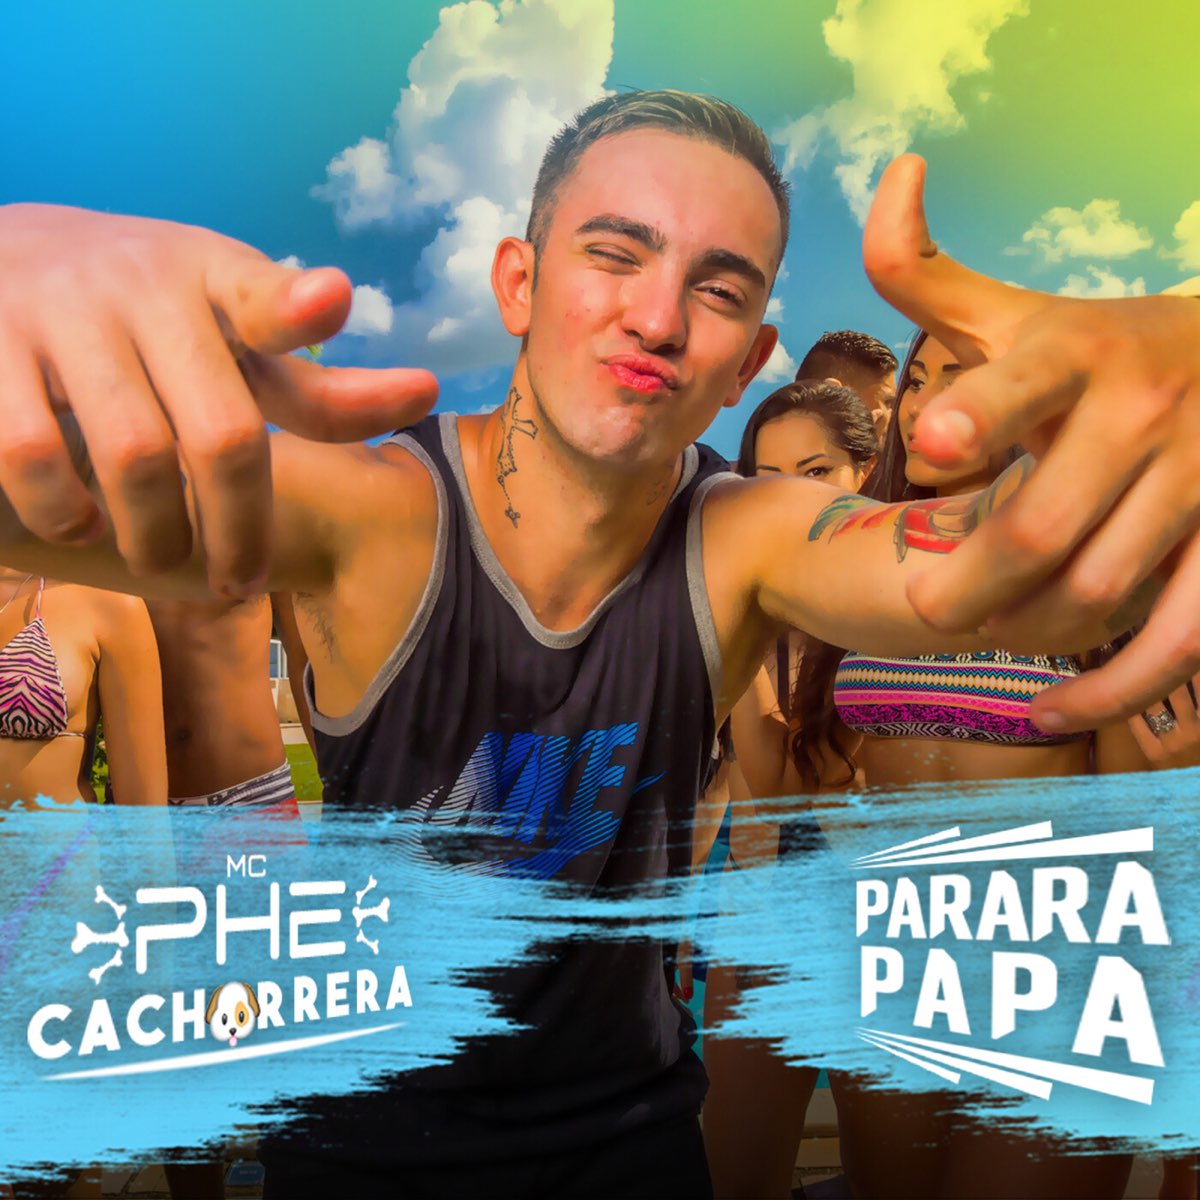 Parara Papa Parara Papa Parara Papa - Single by Mc Phe Cachorrera on Apple Music